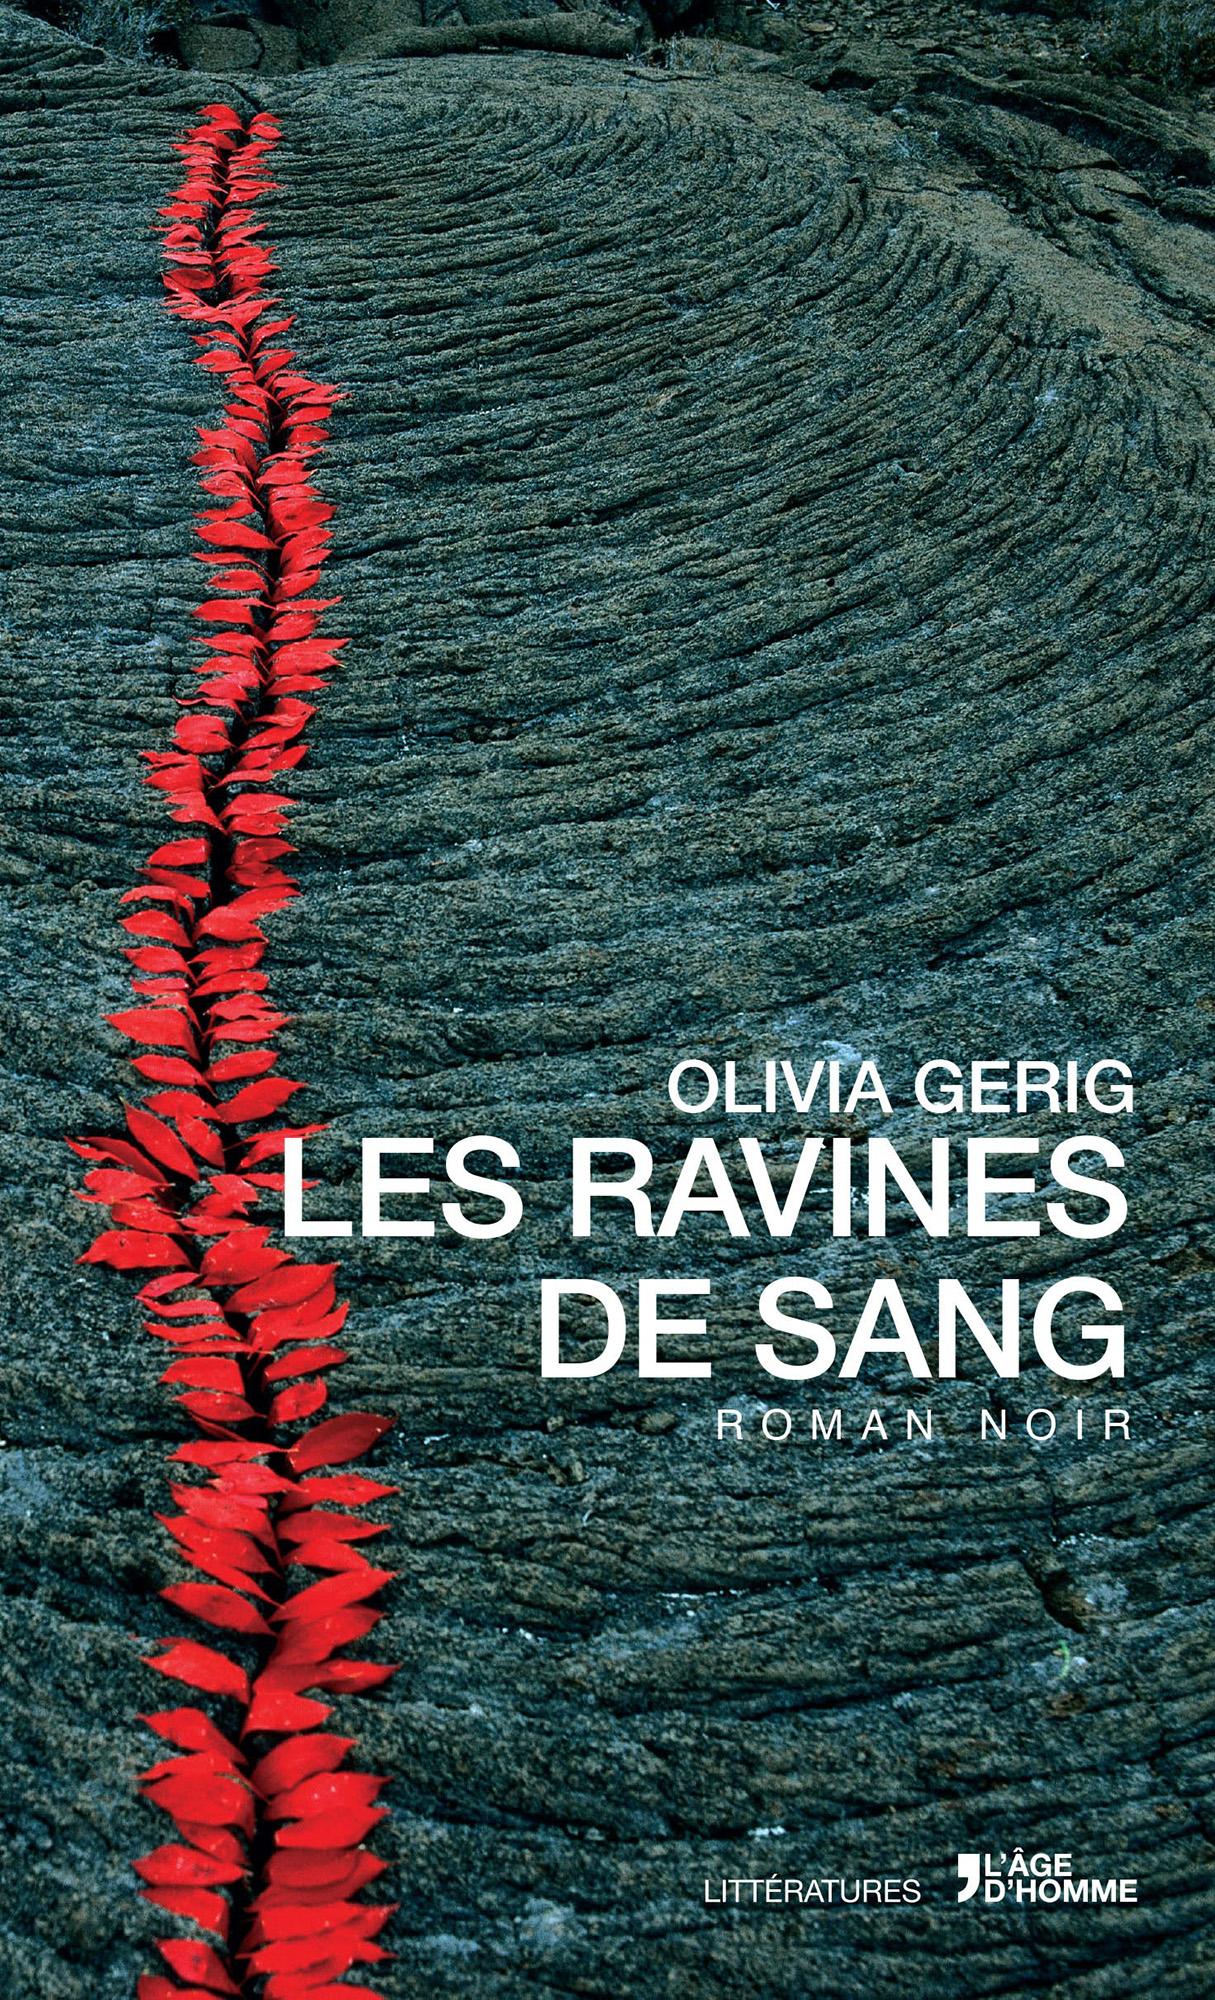 Couverture du livre "Les Ravines de sang" de Olivia Gerig. [éditions L'Age d'Homme]